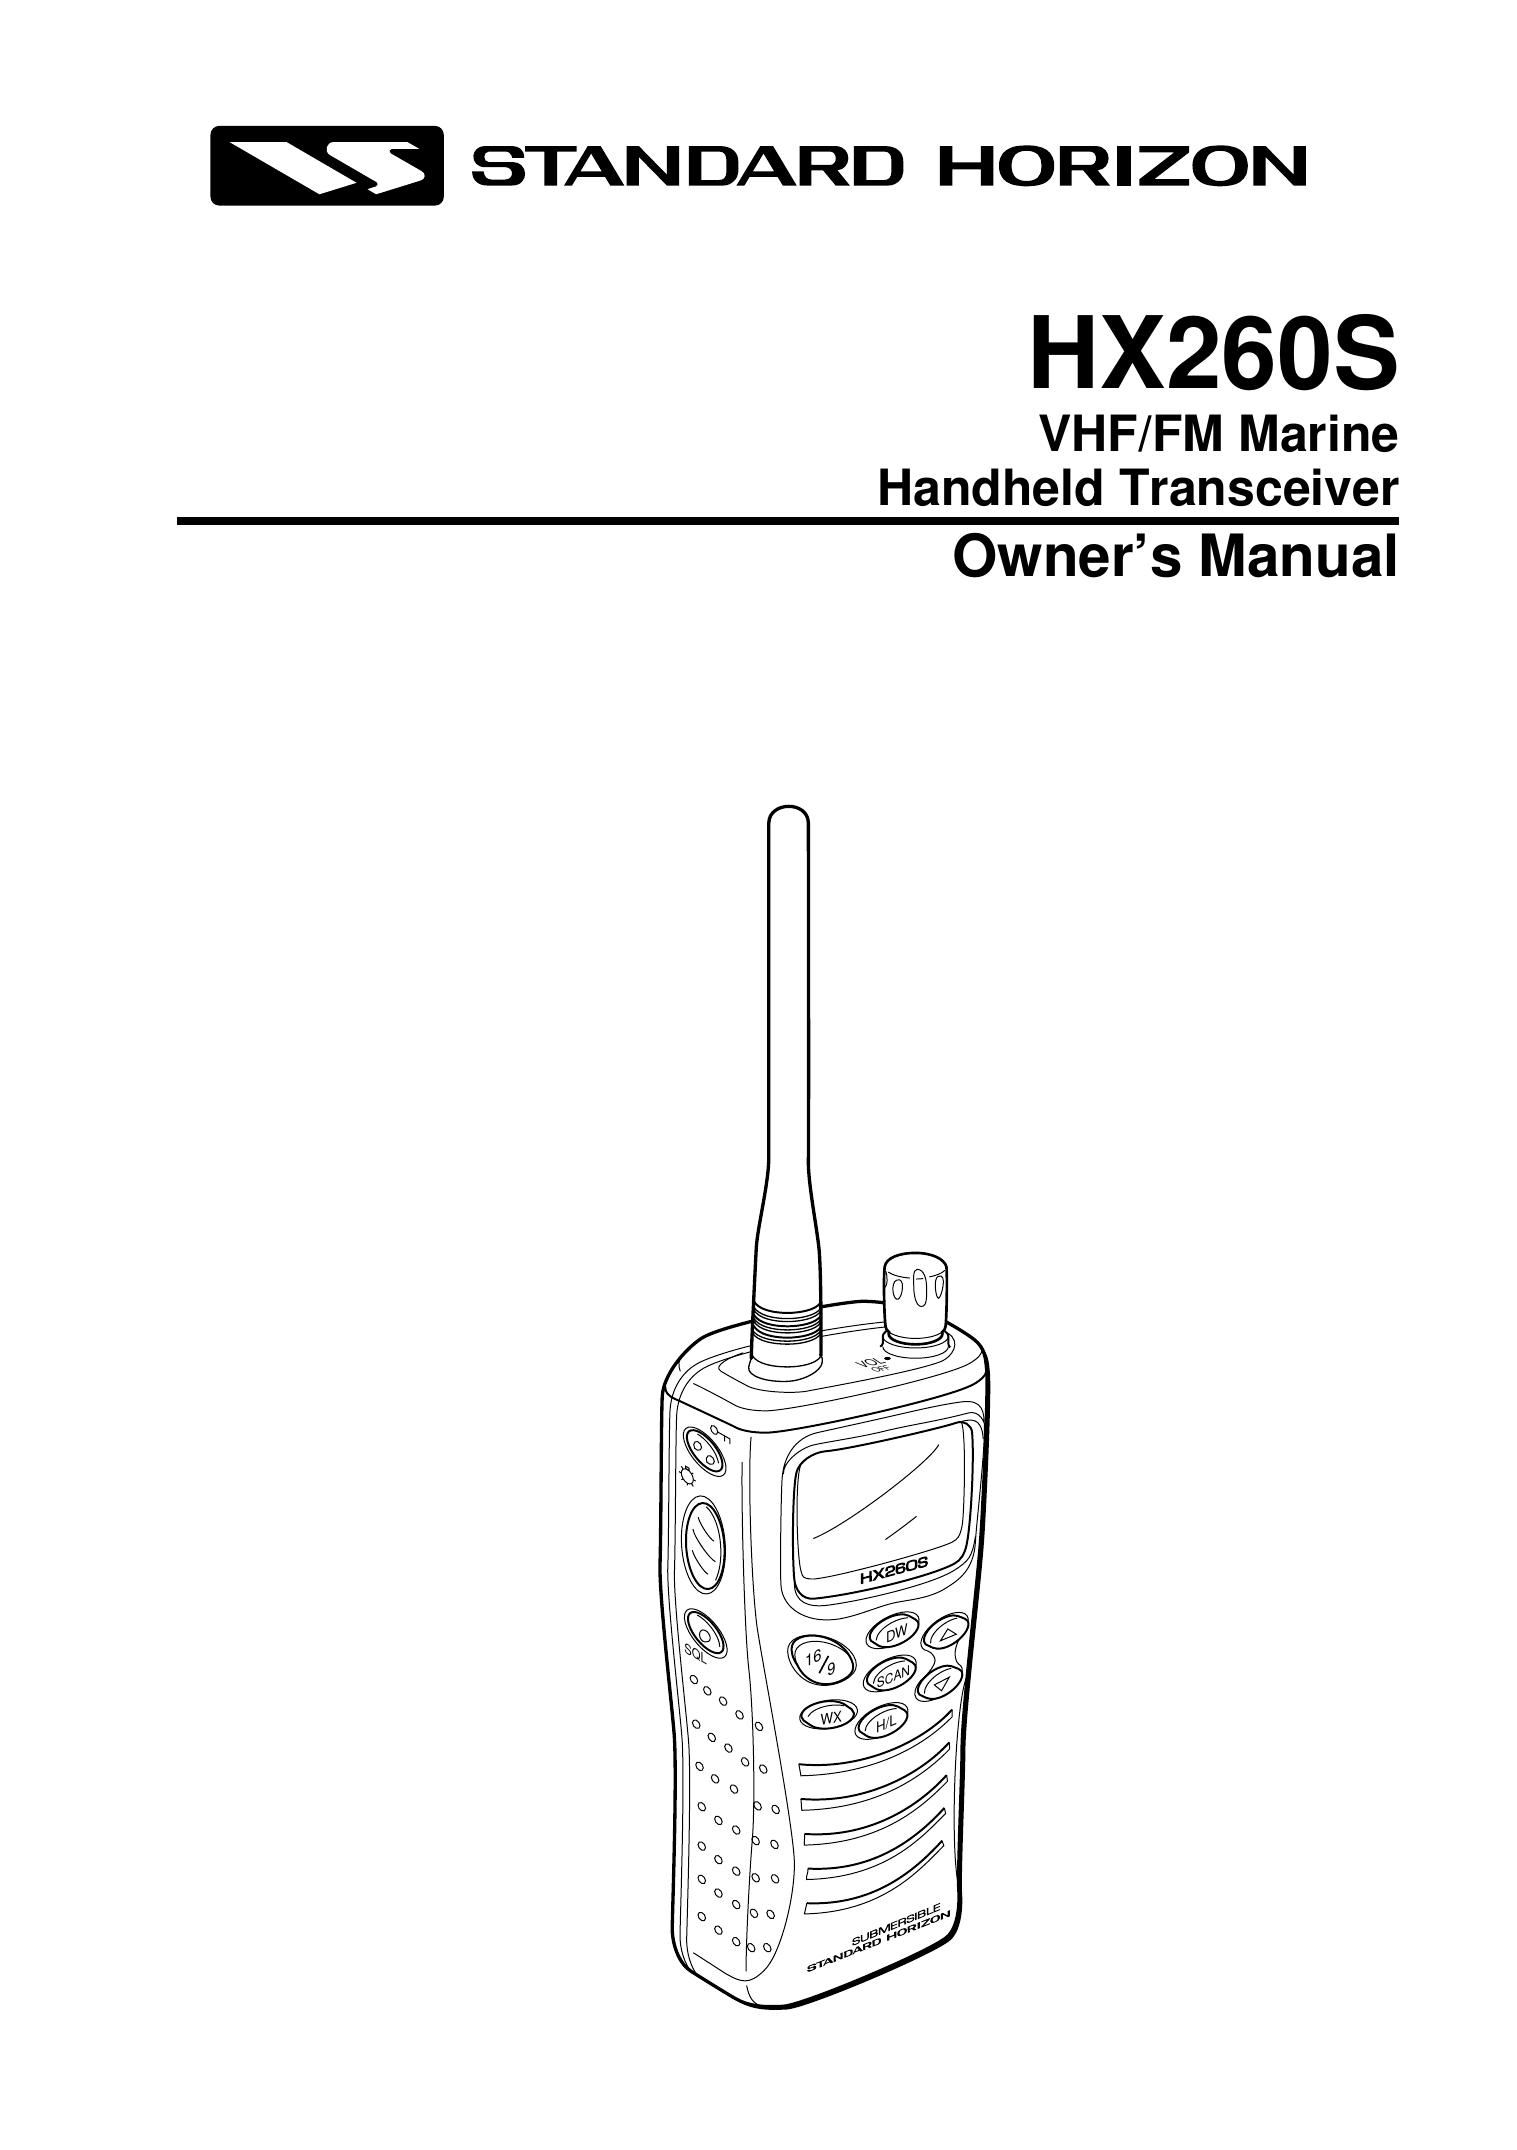 Standard Horizon HX260S Marine Radio User Manual